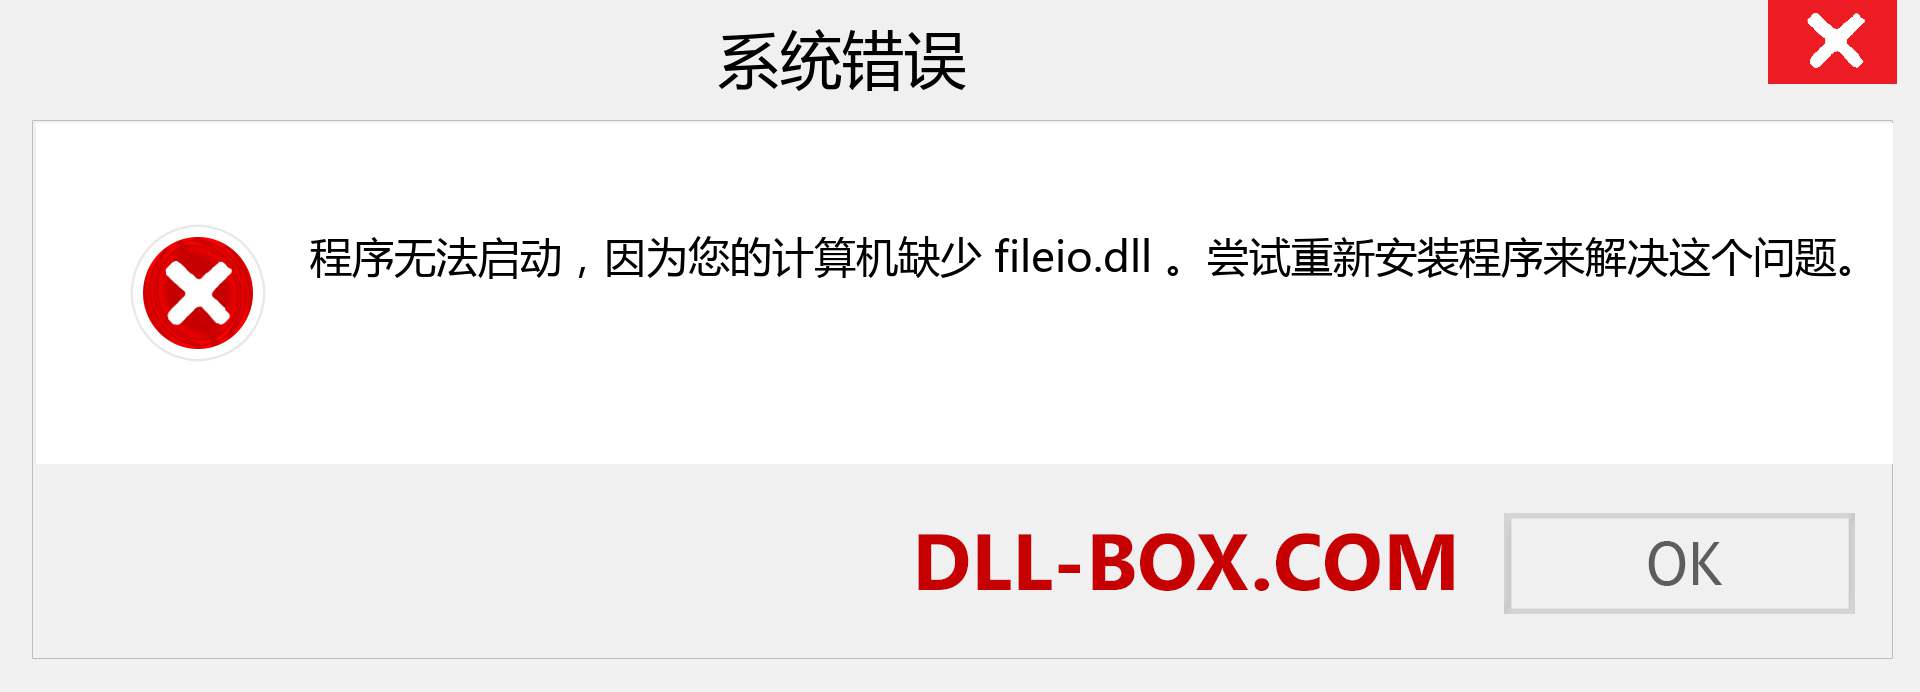 fileio.dll 文件丢失？。 适用于 Windows 7、8、10 的下载 - 修复 Windows、照片、图像上的 fileio dll 丢失错误